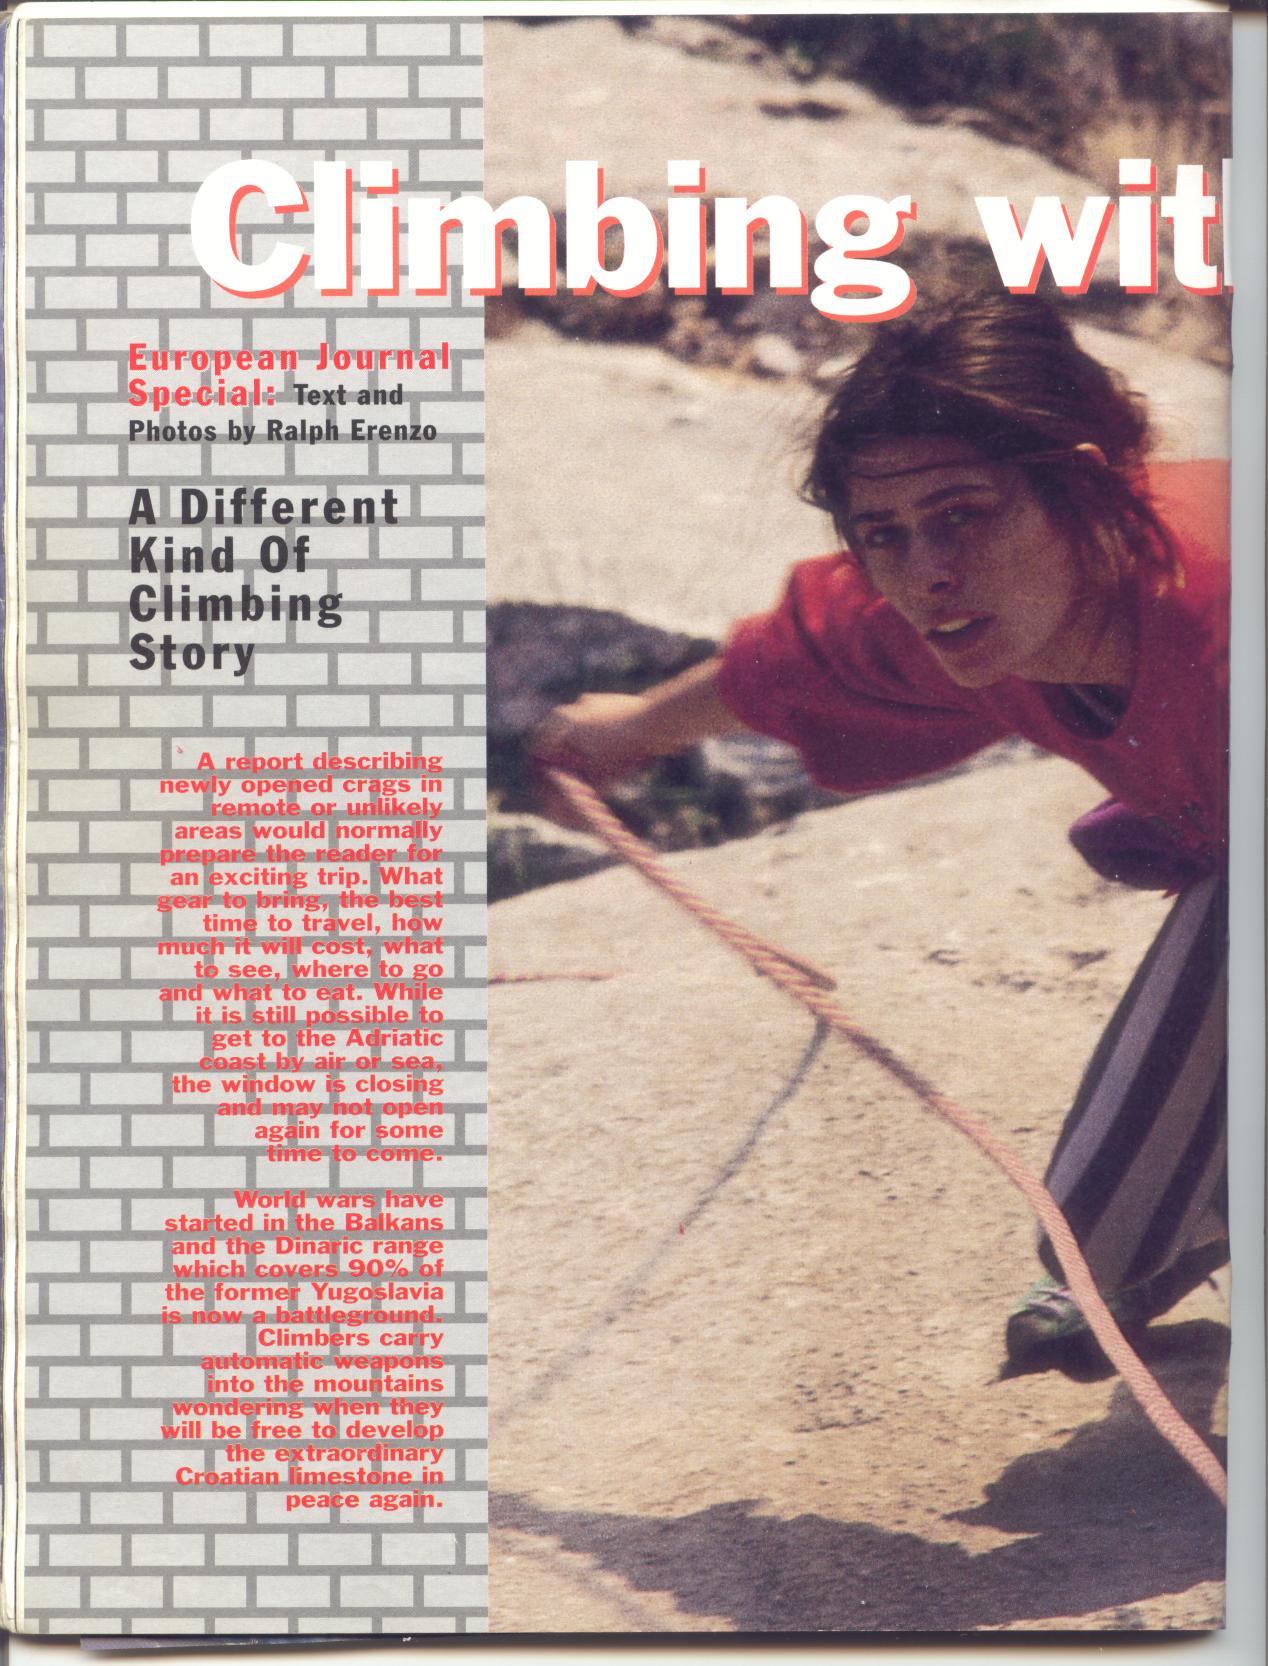 Sport Climbing